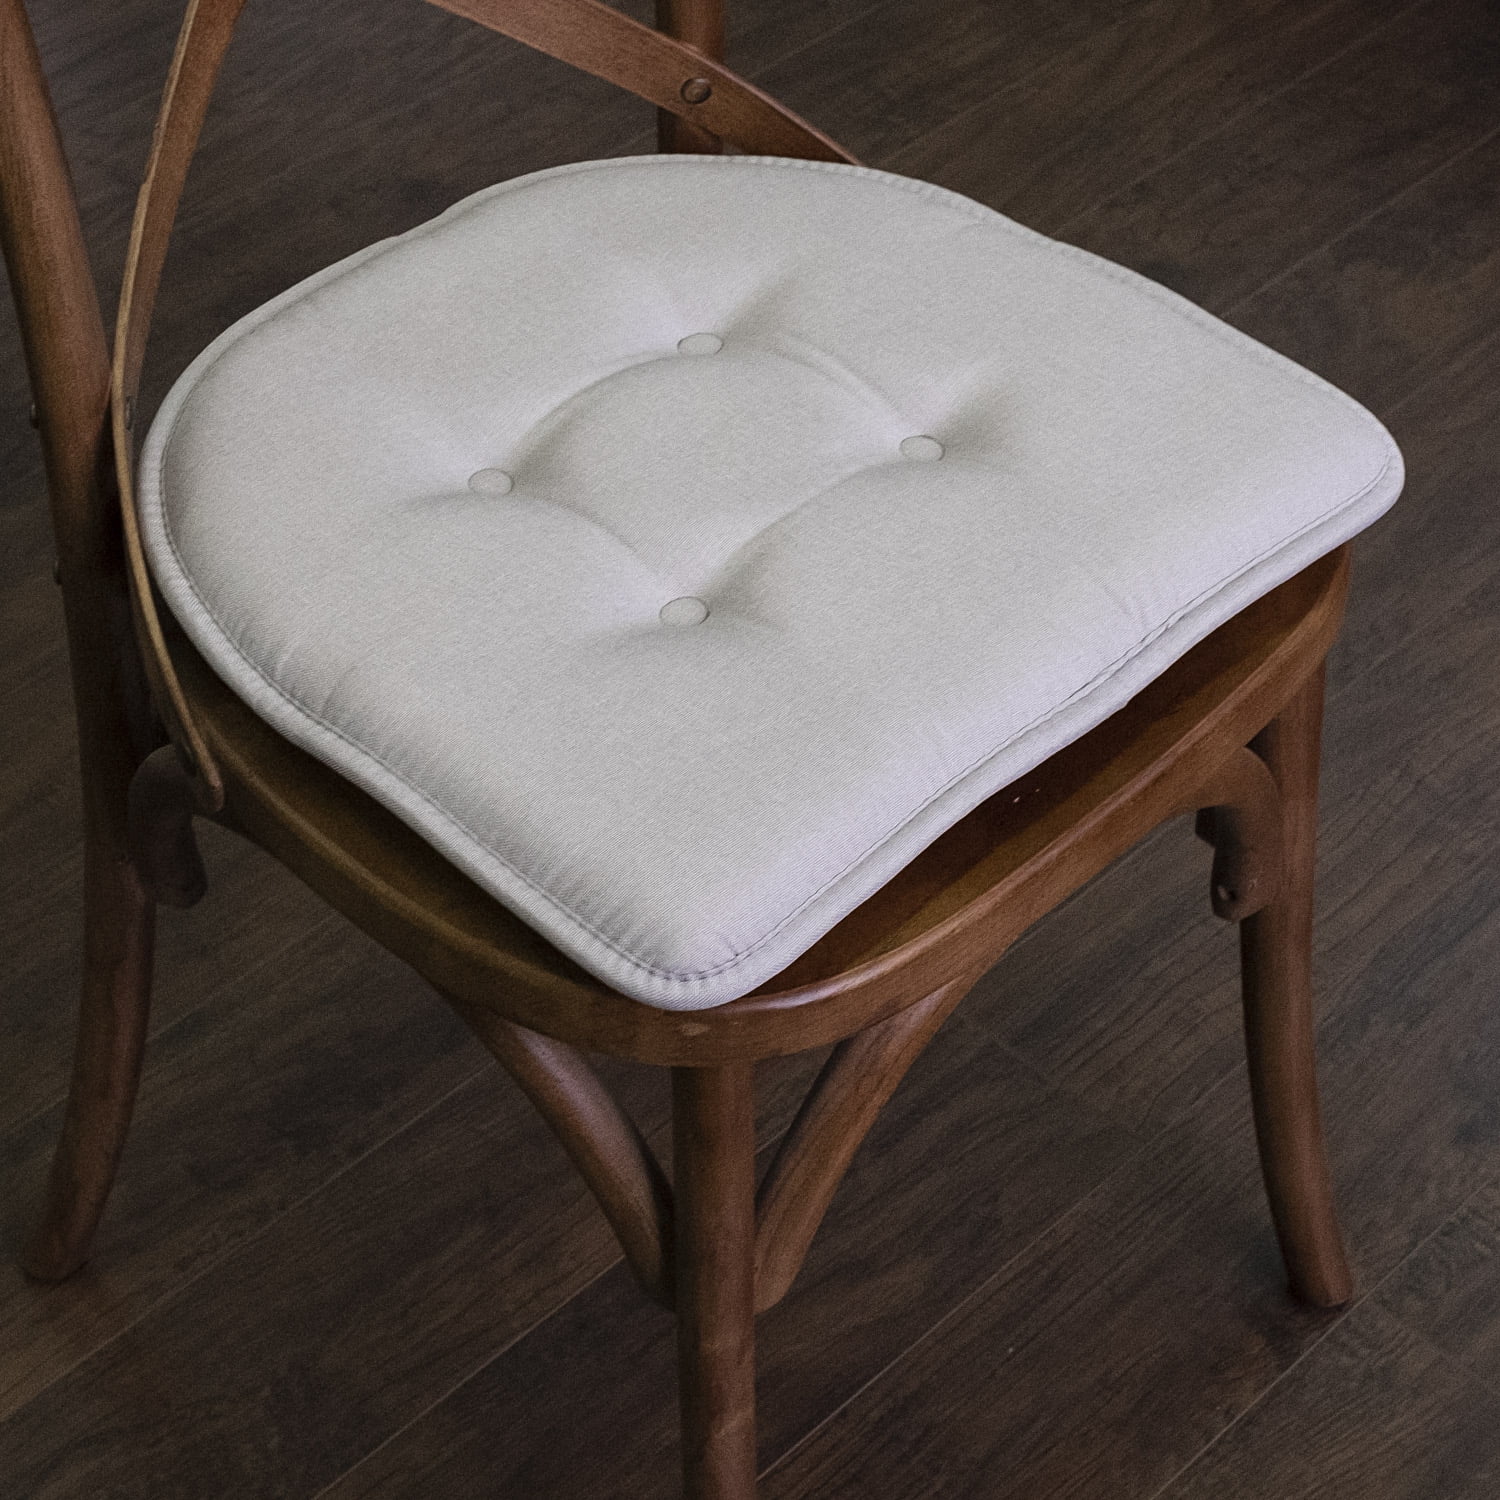 Cushions chairs, U-shape chair cushion, pads for chairs, chair cushion with  ties - Shop Kmardll Pillows & Cushions - Pinkoi